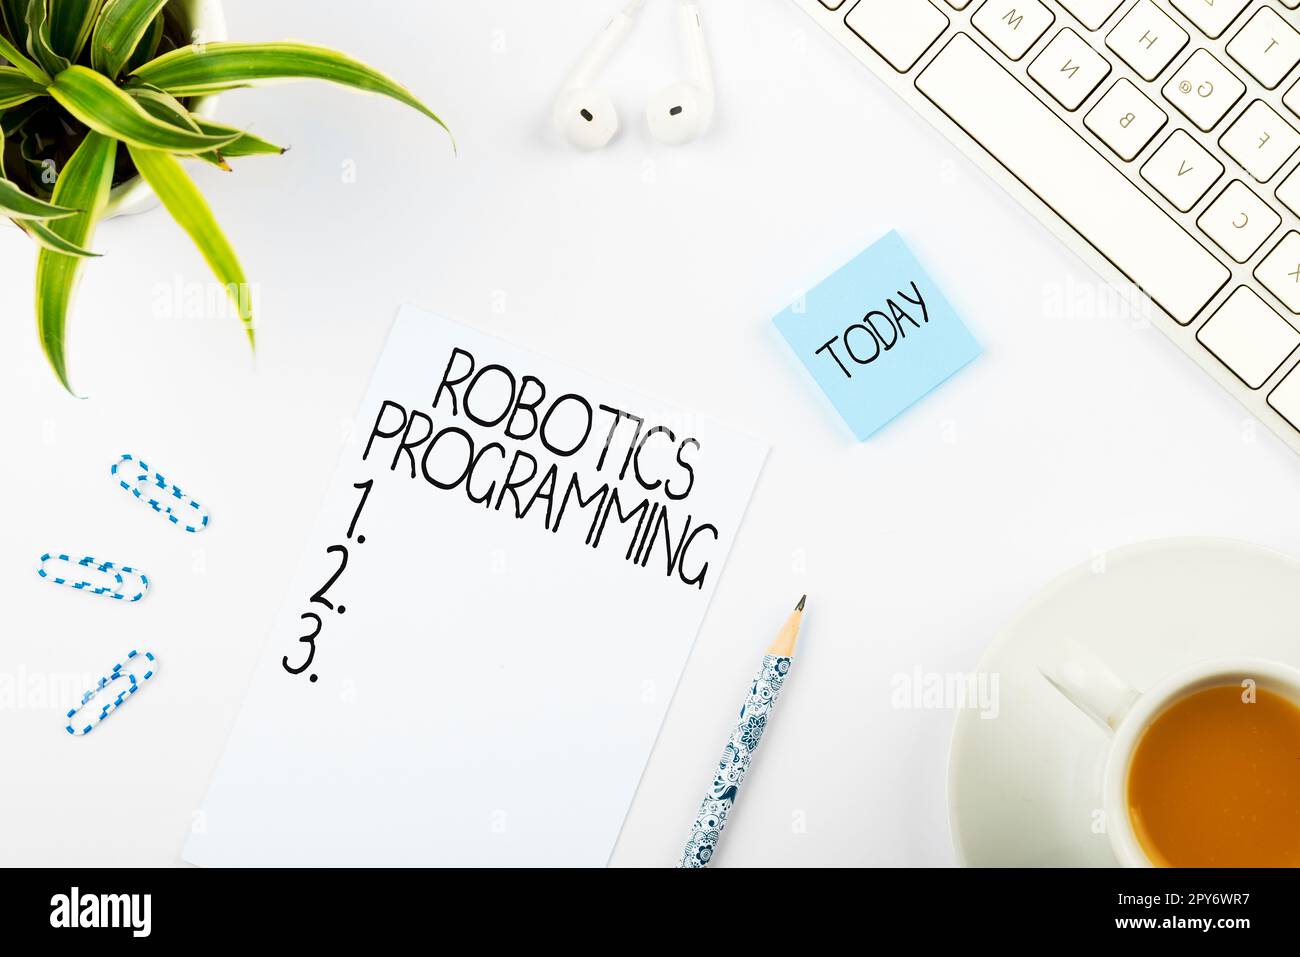 Konzeptionelle Beschriftung Robotik-Programmierung. Internet-Konzeptsoftware, die zur Ausführung autonomer Aufgaben verwendet wurde Stockfoto